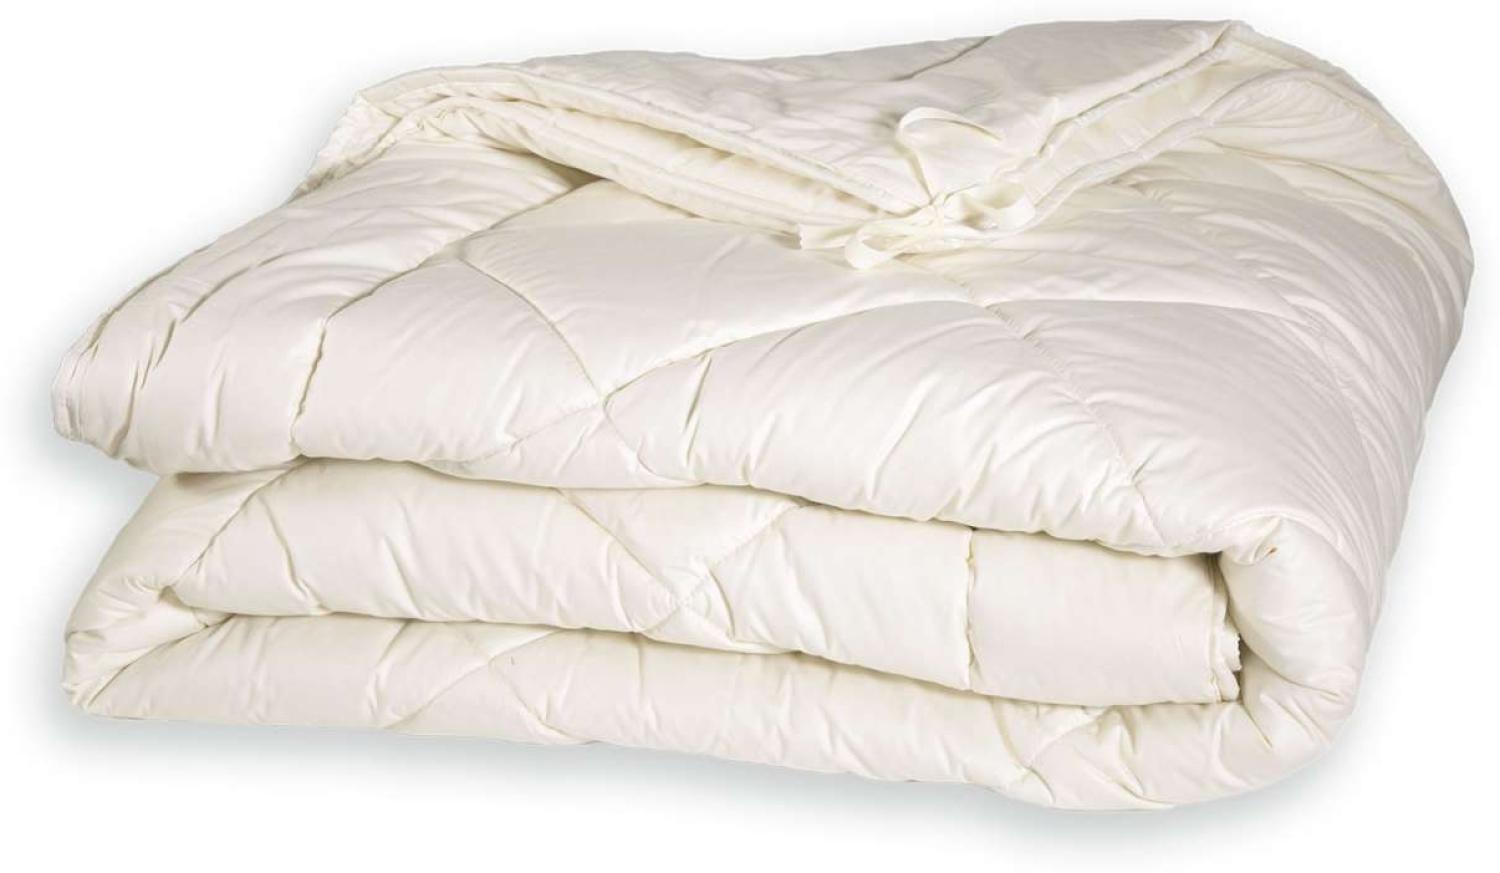 PureNature Vierjahreszeiten Bettdecke Schafschurwolle mit Knüpfbändern Vierjahreszeiten-Decke Schurwolle, 200x220 cm Bild 1